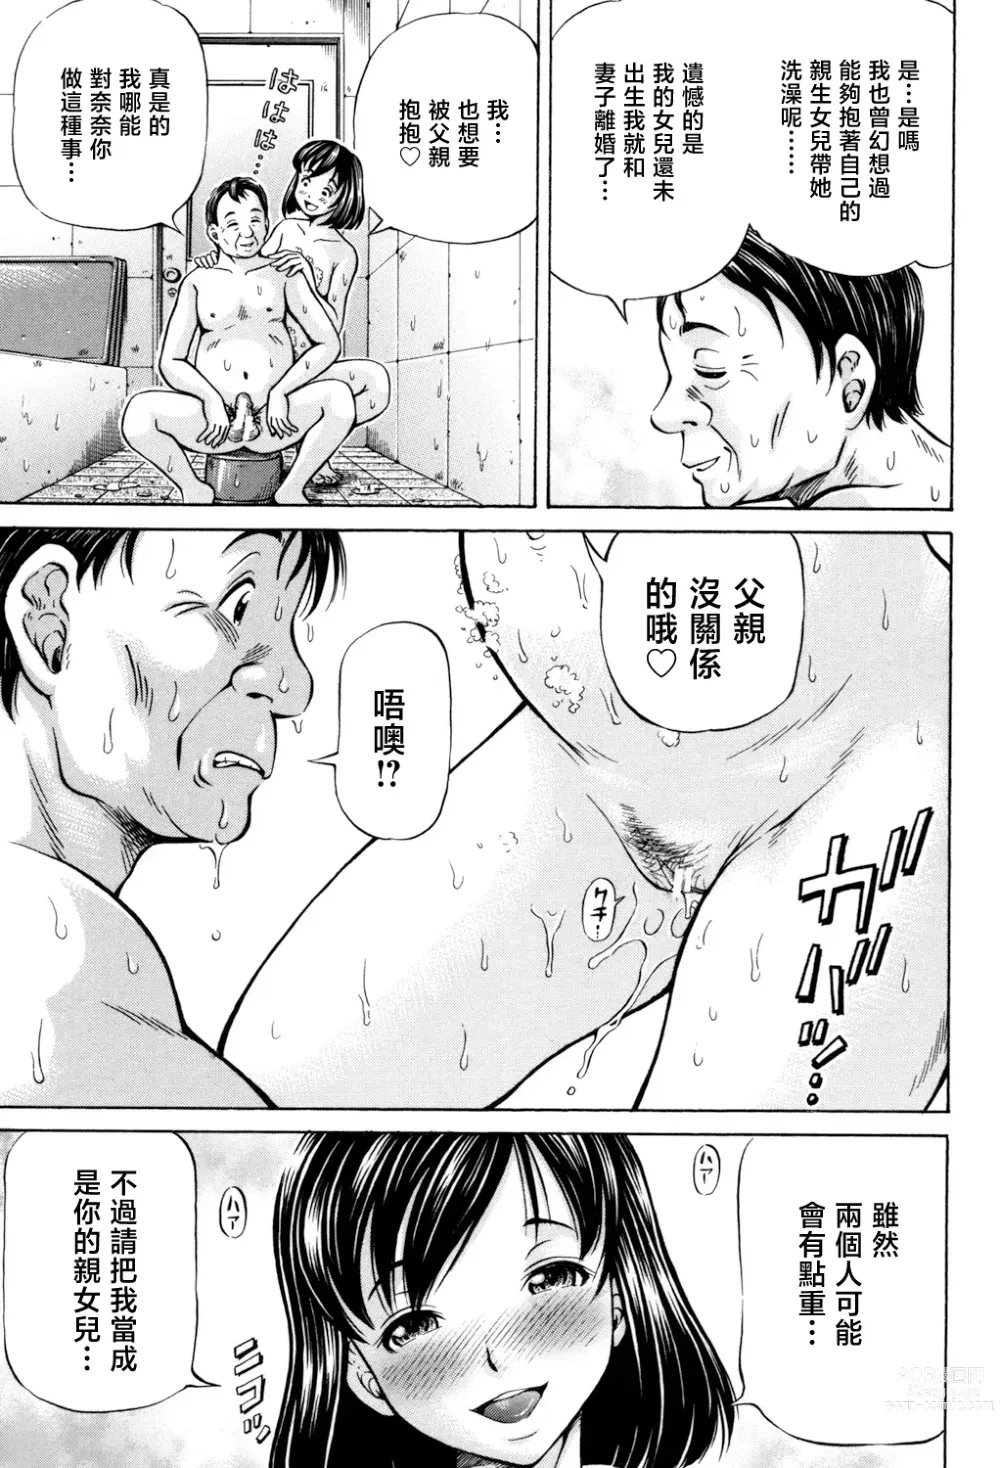 Page 9 of manga Omokage ＝ ones figure